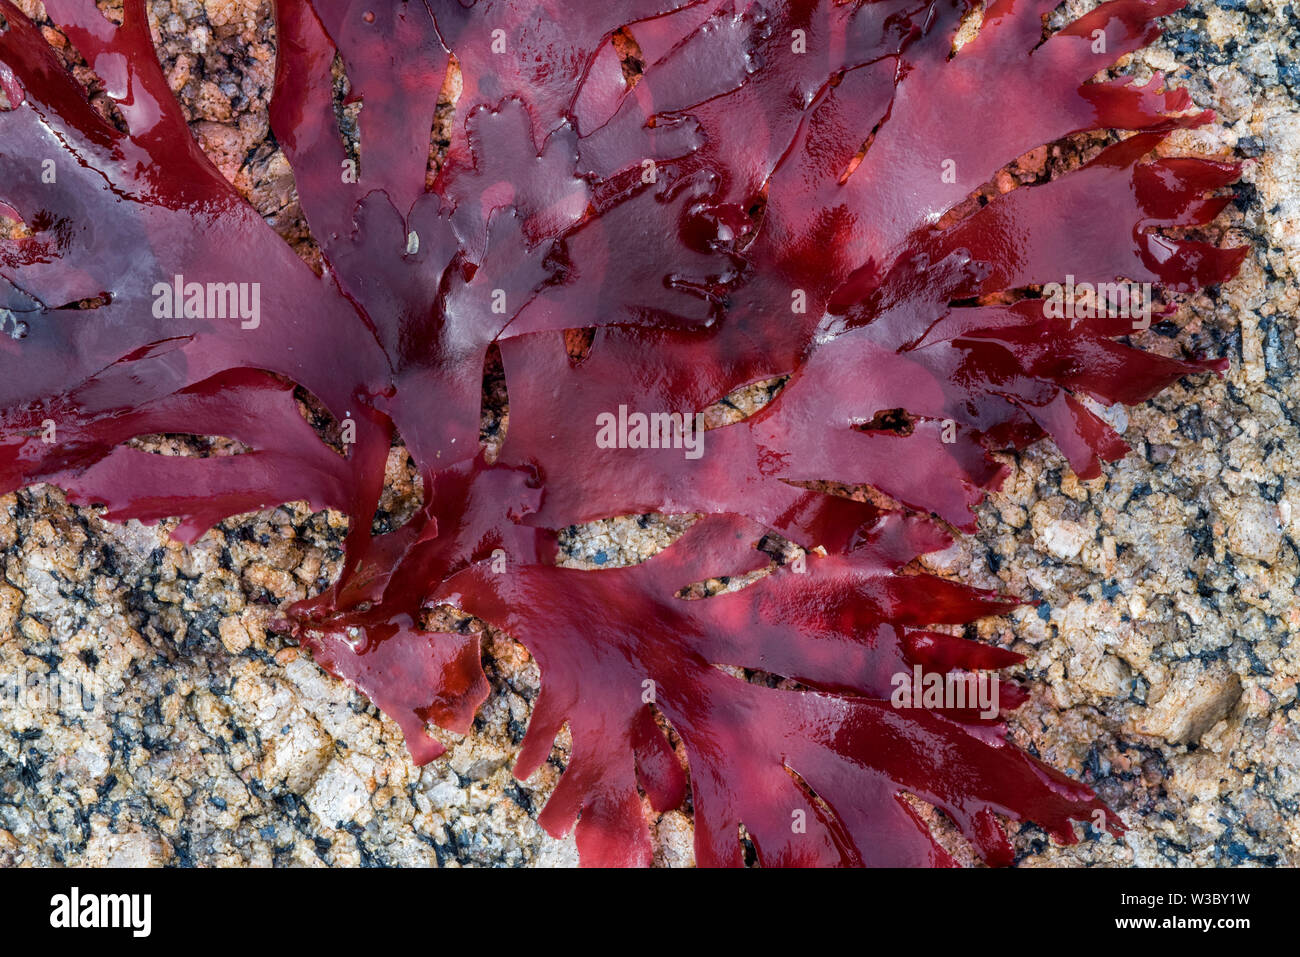 Musgo irlandés / carragenina moss (Chondrus crispus) alga roja arrastrado en la playa rocosa Foto de stock